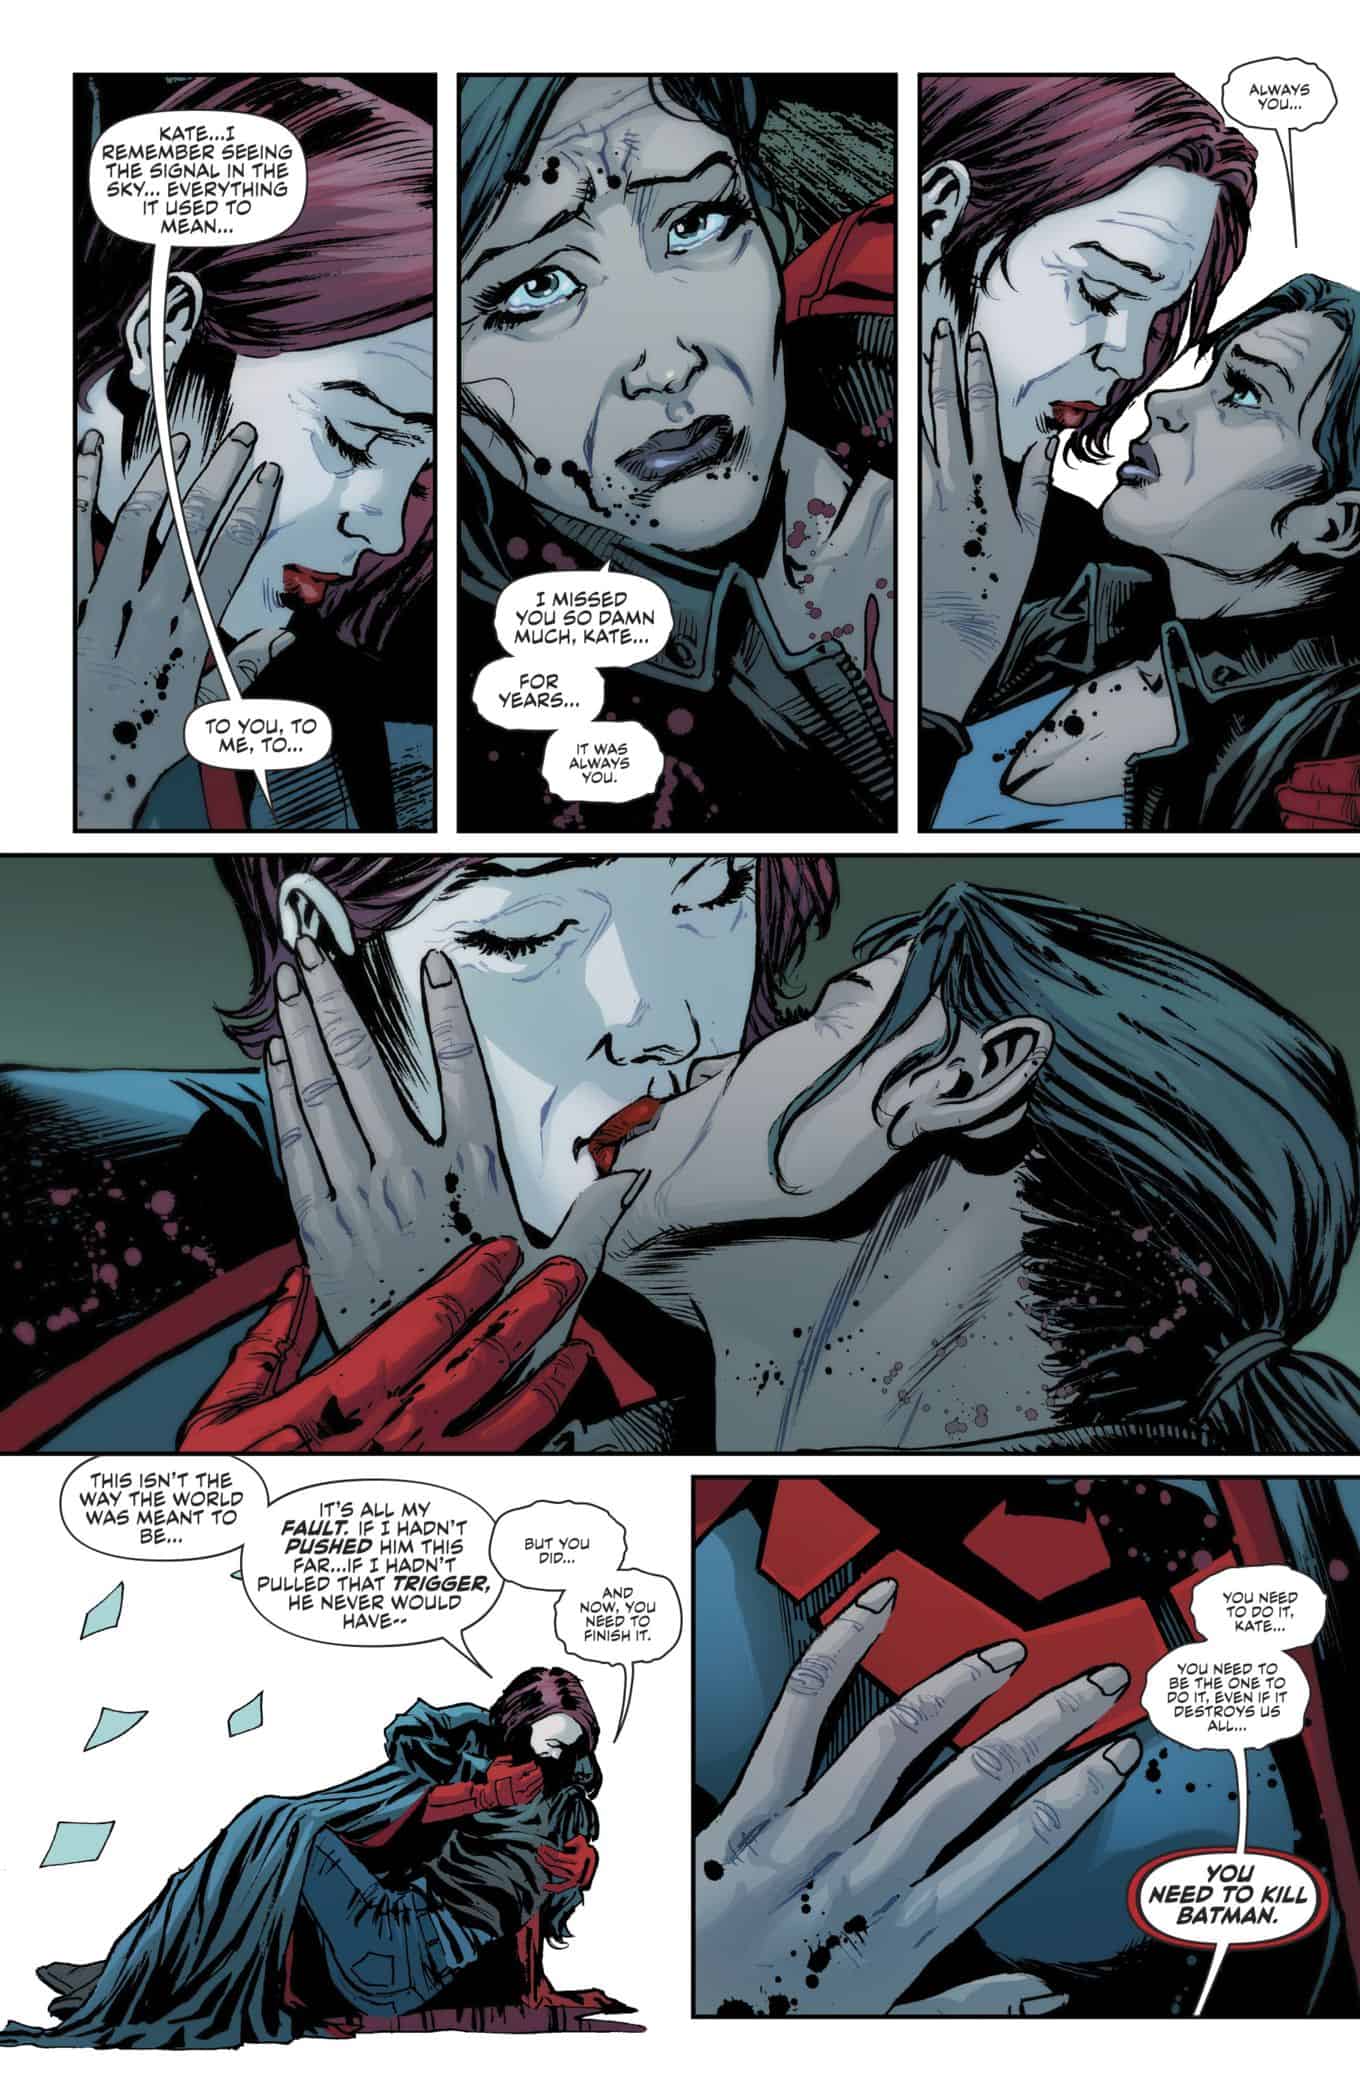 DC Comics Rebirth Spoilers: Batwoman #6 Reveals Big Death ...